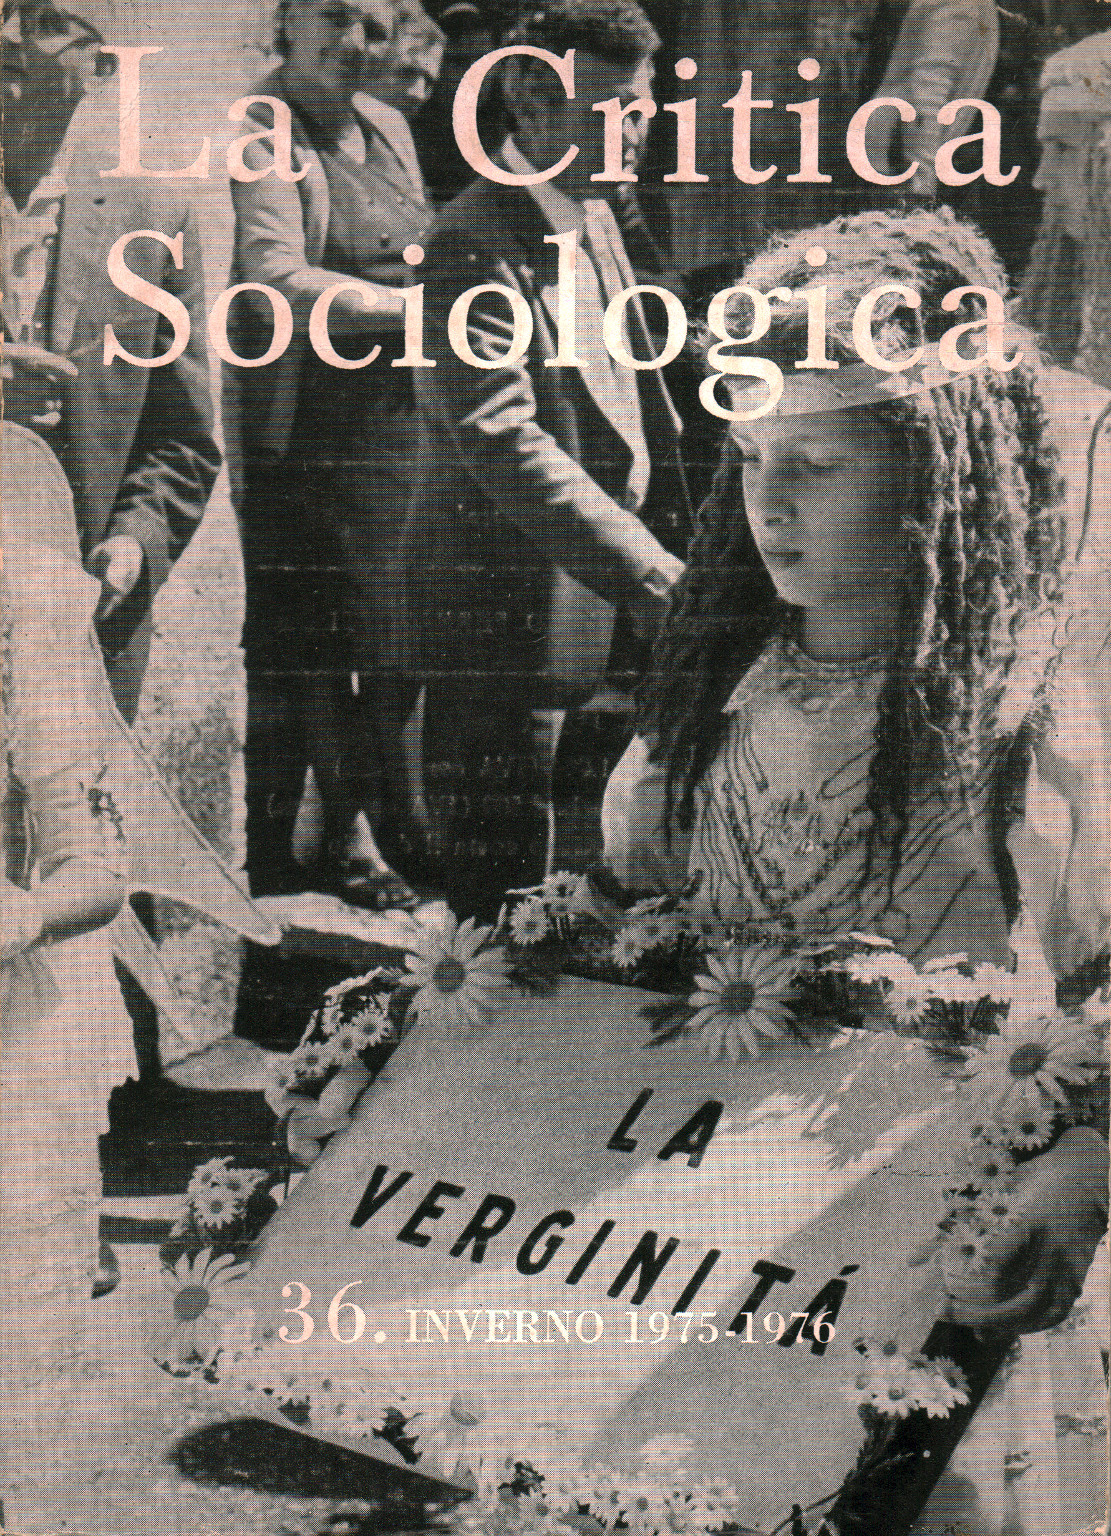 La Critica Sociologica n. 36. Inverno 1975-1976, s.a.